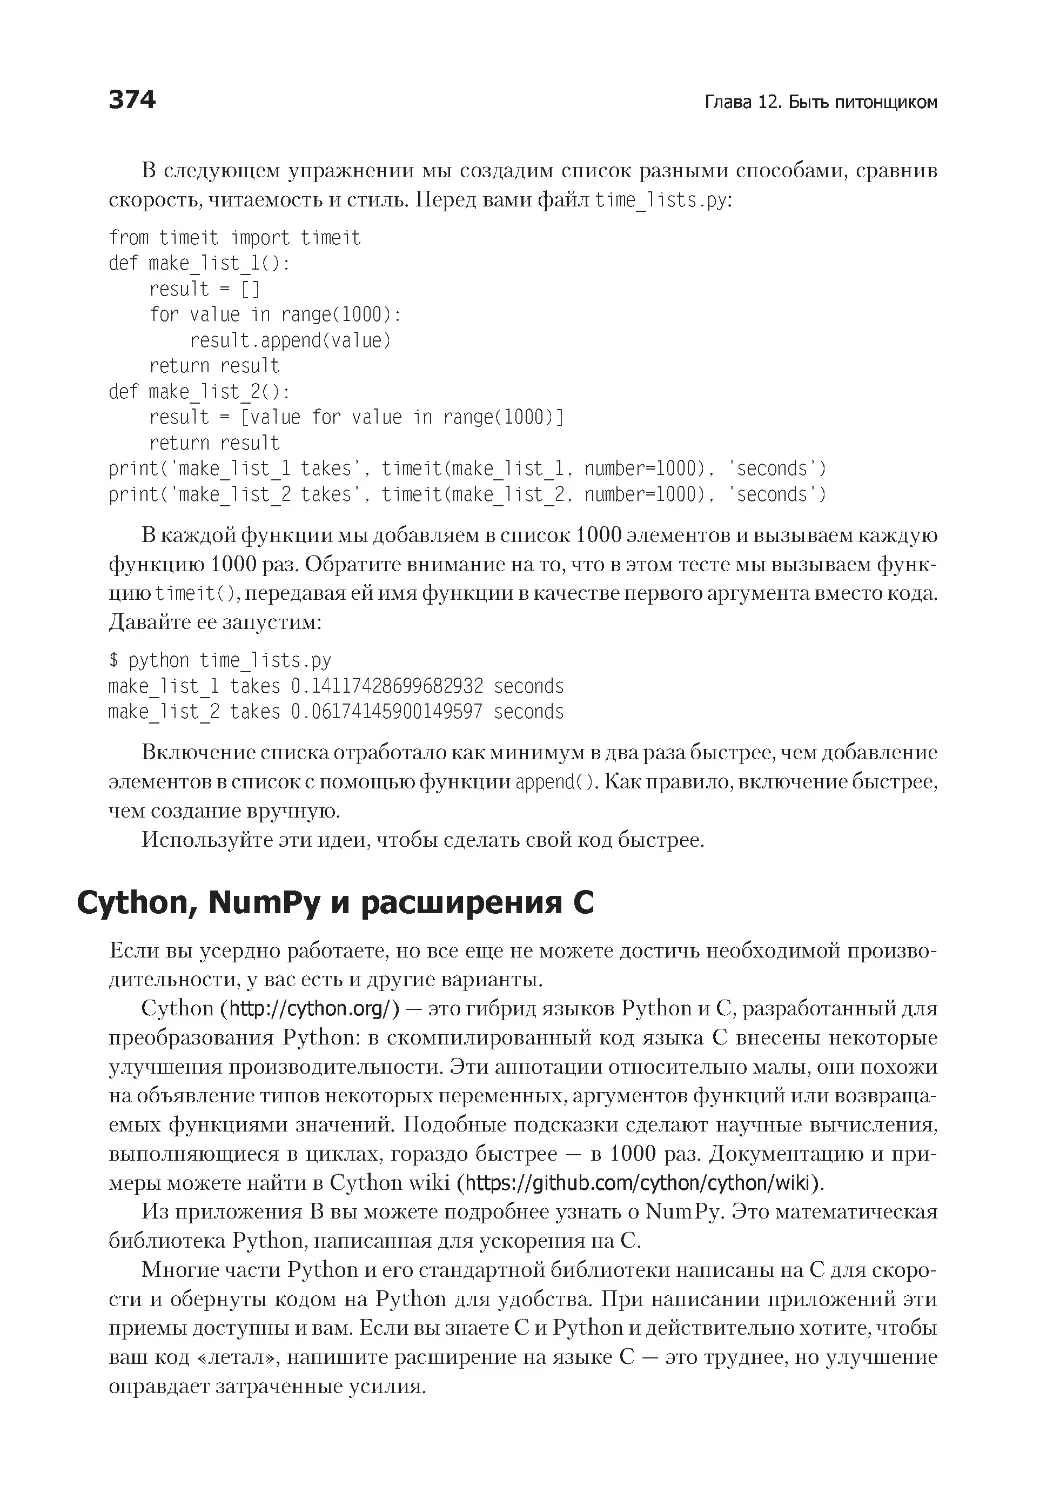 Cython, NumPy и расширения C